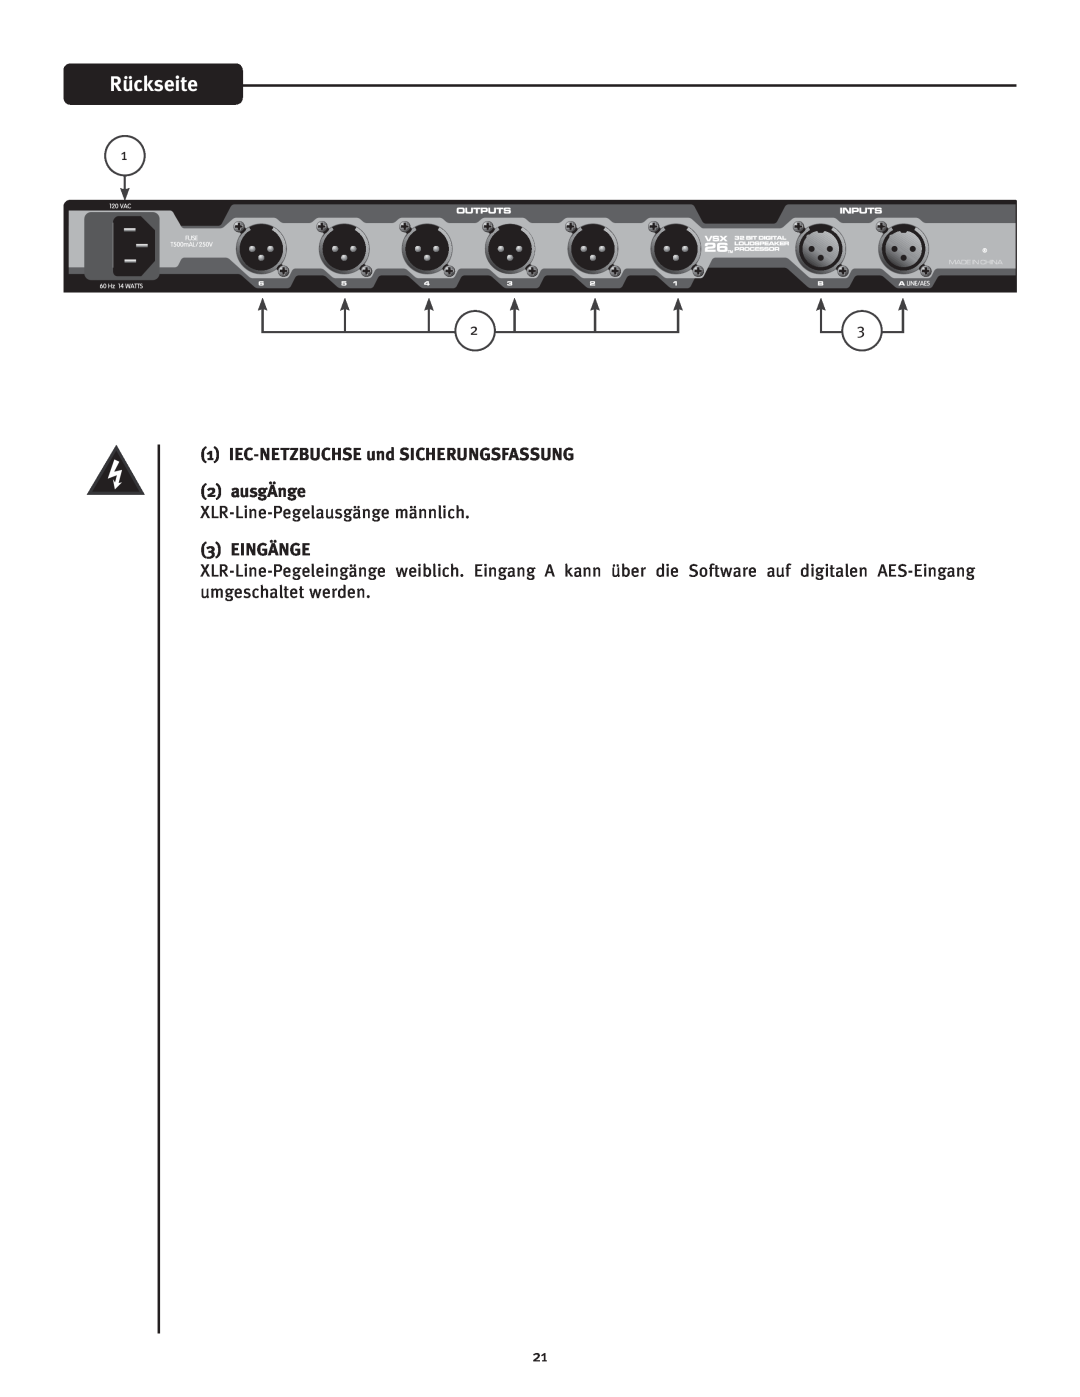 Peavey VSX 26 manual Rückseite, 1IEC-NETZBUCHSEund SICHERUNGSFASSUNG 2ausgÄnge, Eingänge 